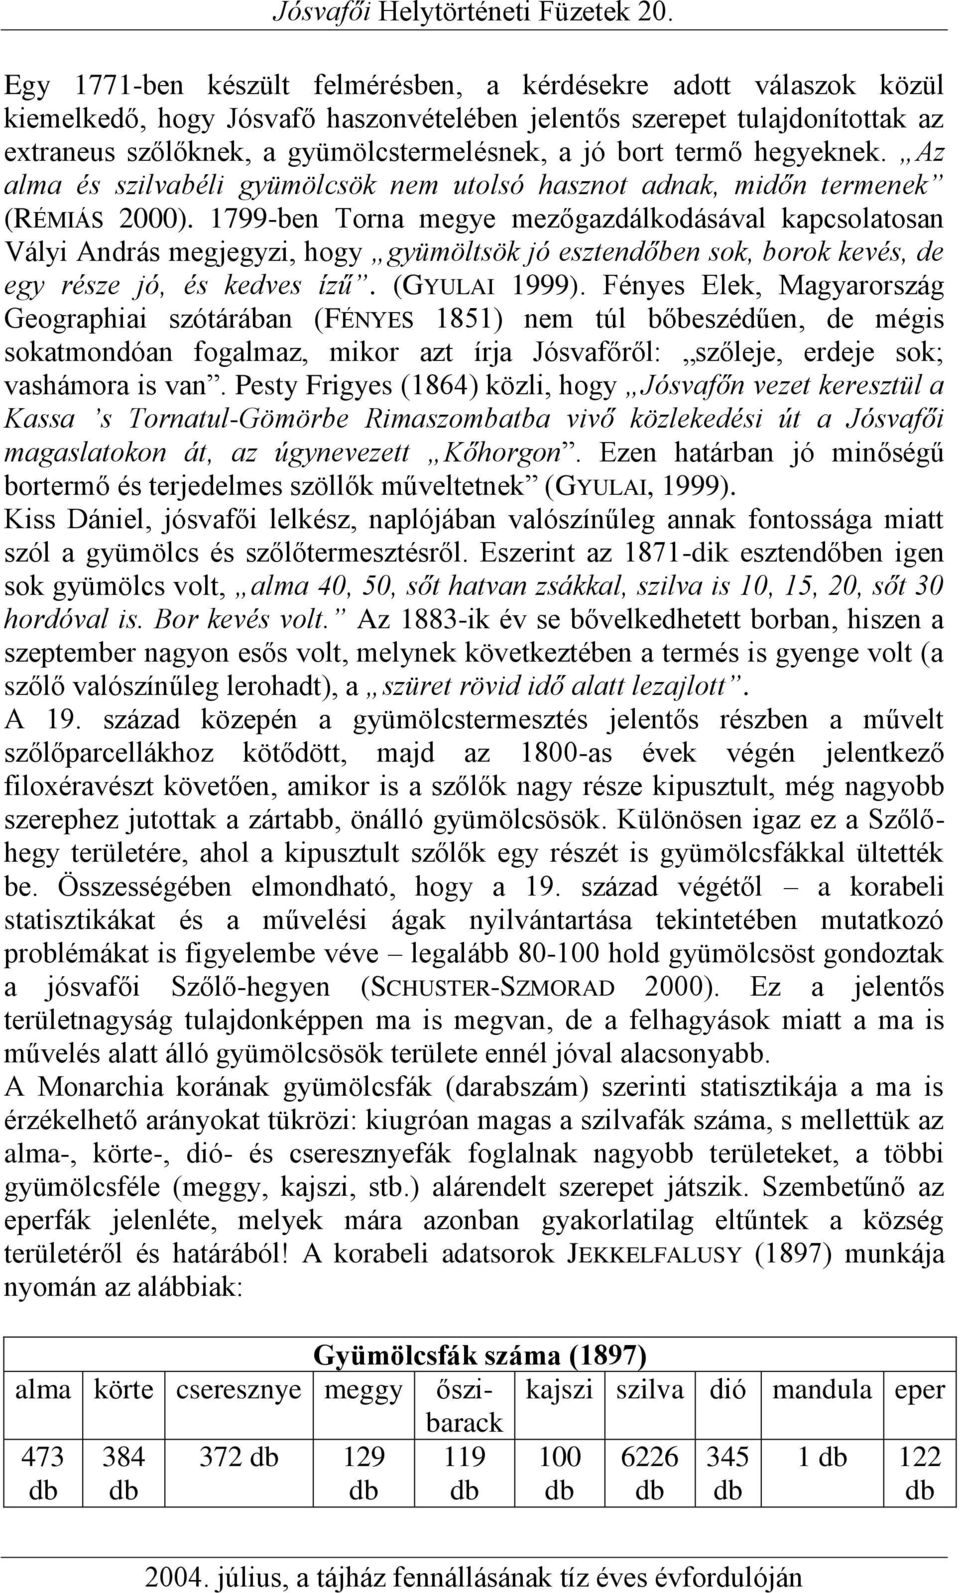 1799-ben Torna megye mezőgazdálkodásával kapcsolatosan Vályi András megjegyzi, hogy gyümöltsök jó esztendőben sok, borok kevés, de egy része jó, és kedves ízű. (GYULAI 1999).